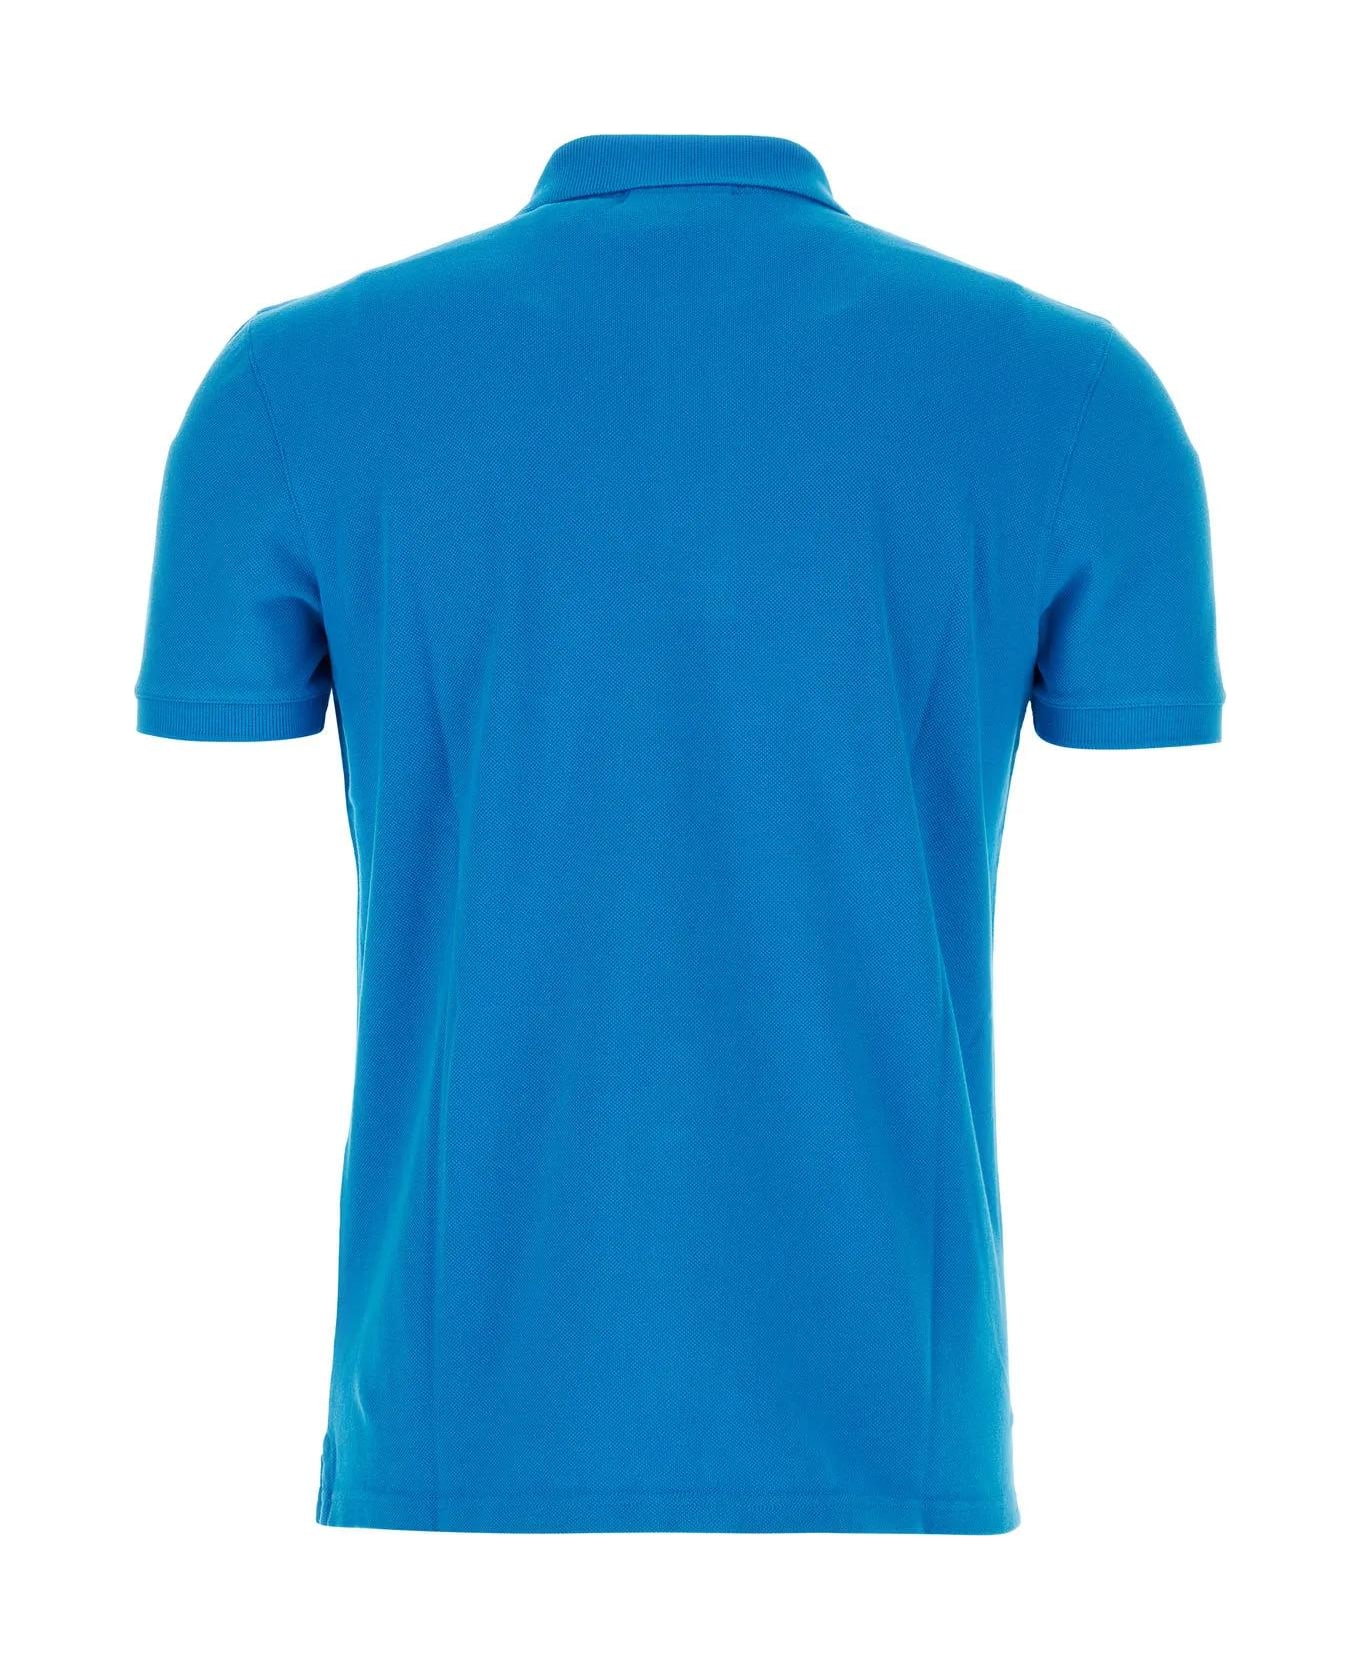 Maison Kitsuné Turquoise Piquet Polo Shirt - Blue